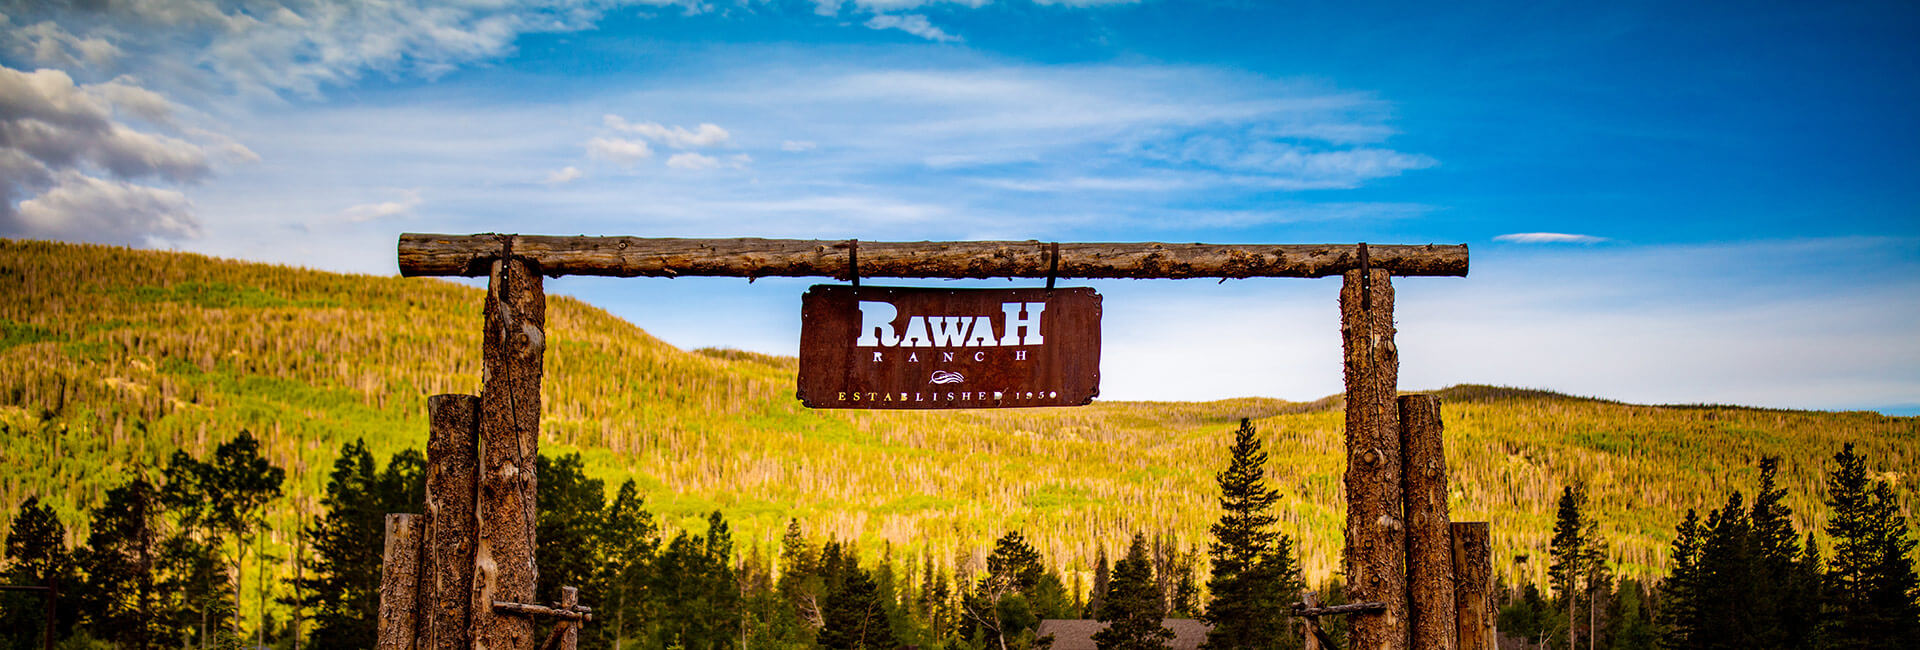 View of fall foliage in Colorado at Rawah Ranch entrance